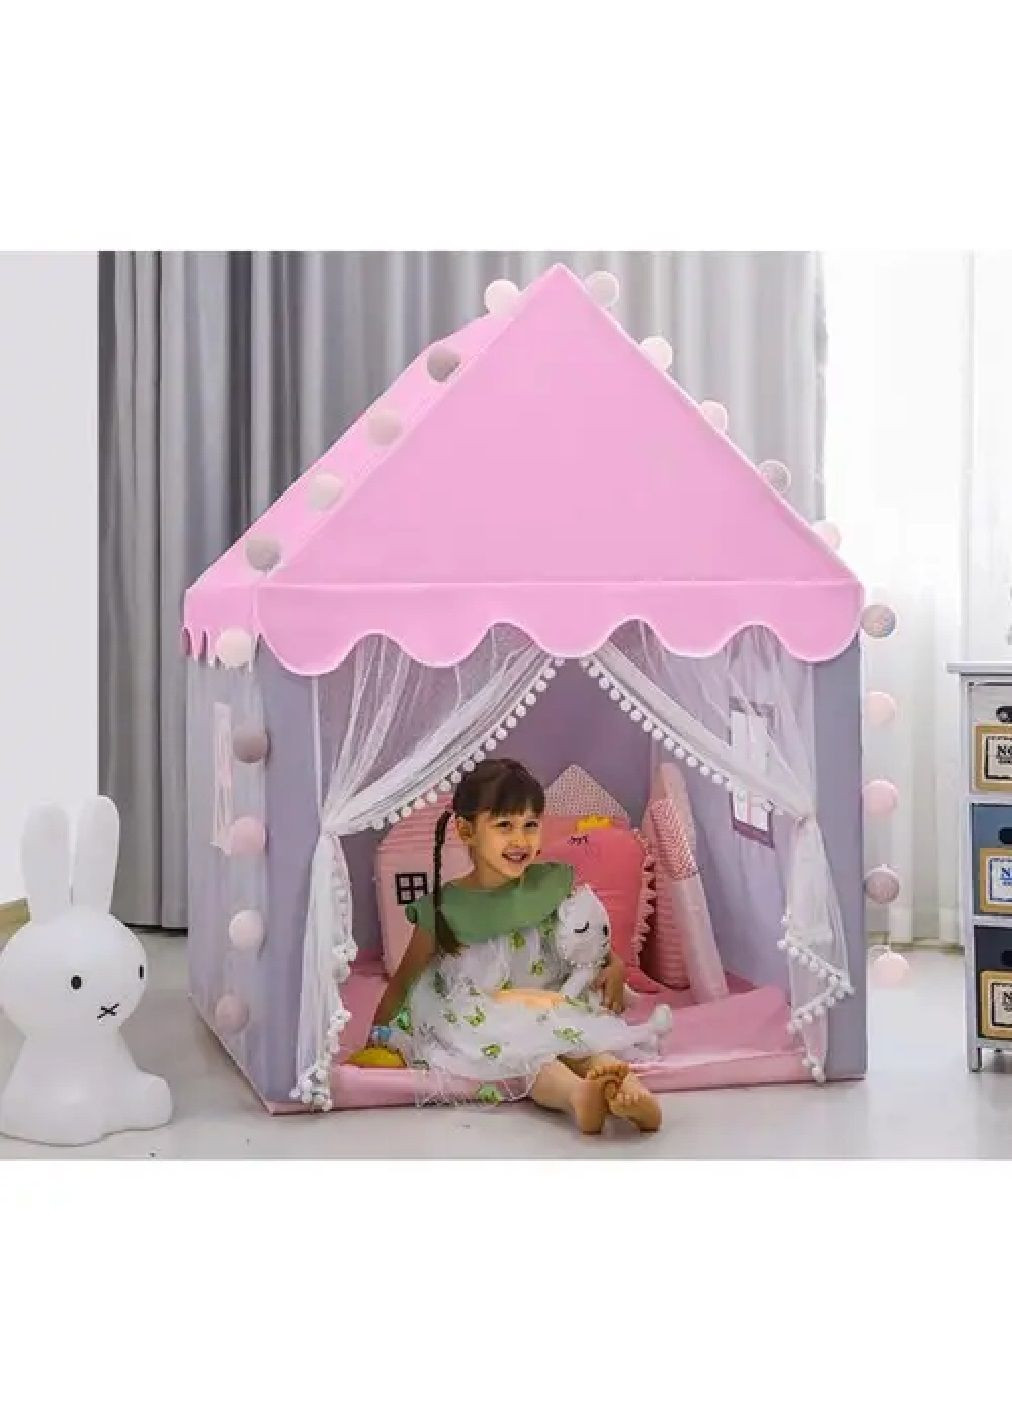 Дитячий ігровий намет будиночок з гірляндою лампочками 20 штук для дітей дівчаток 130х100х115 см (477140-Prob) Рожева Unbranded (294908248)